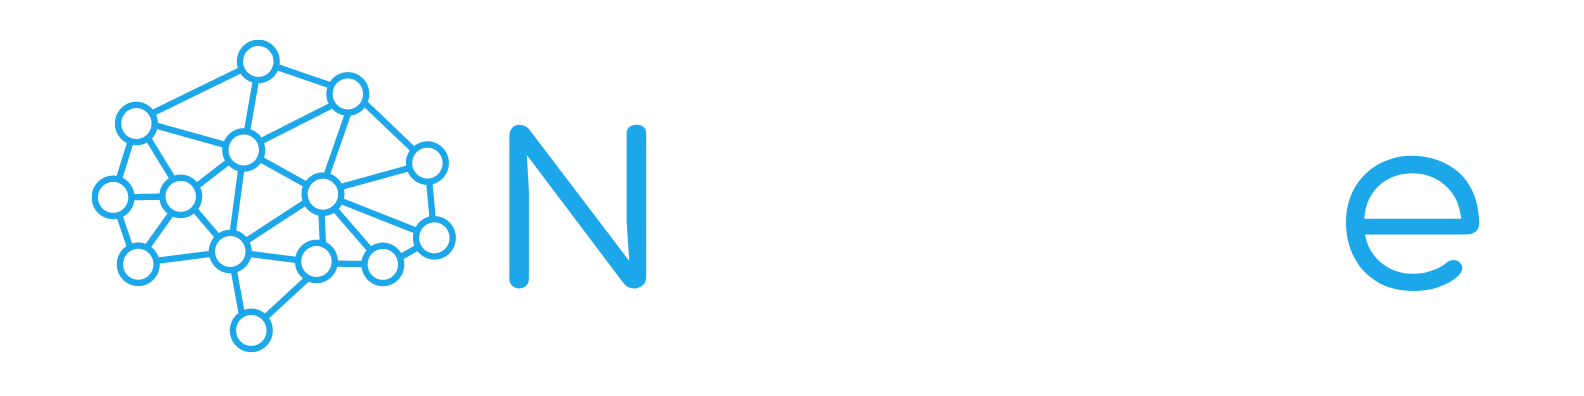 Neuron-e